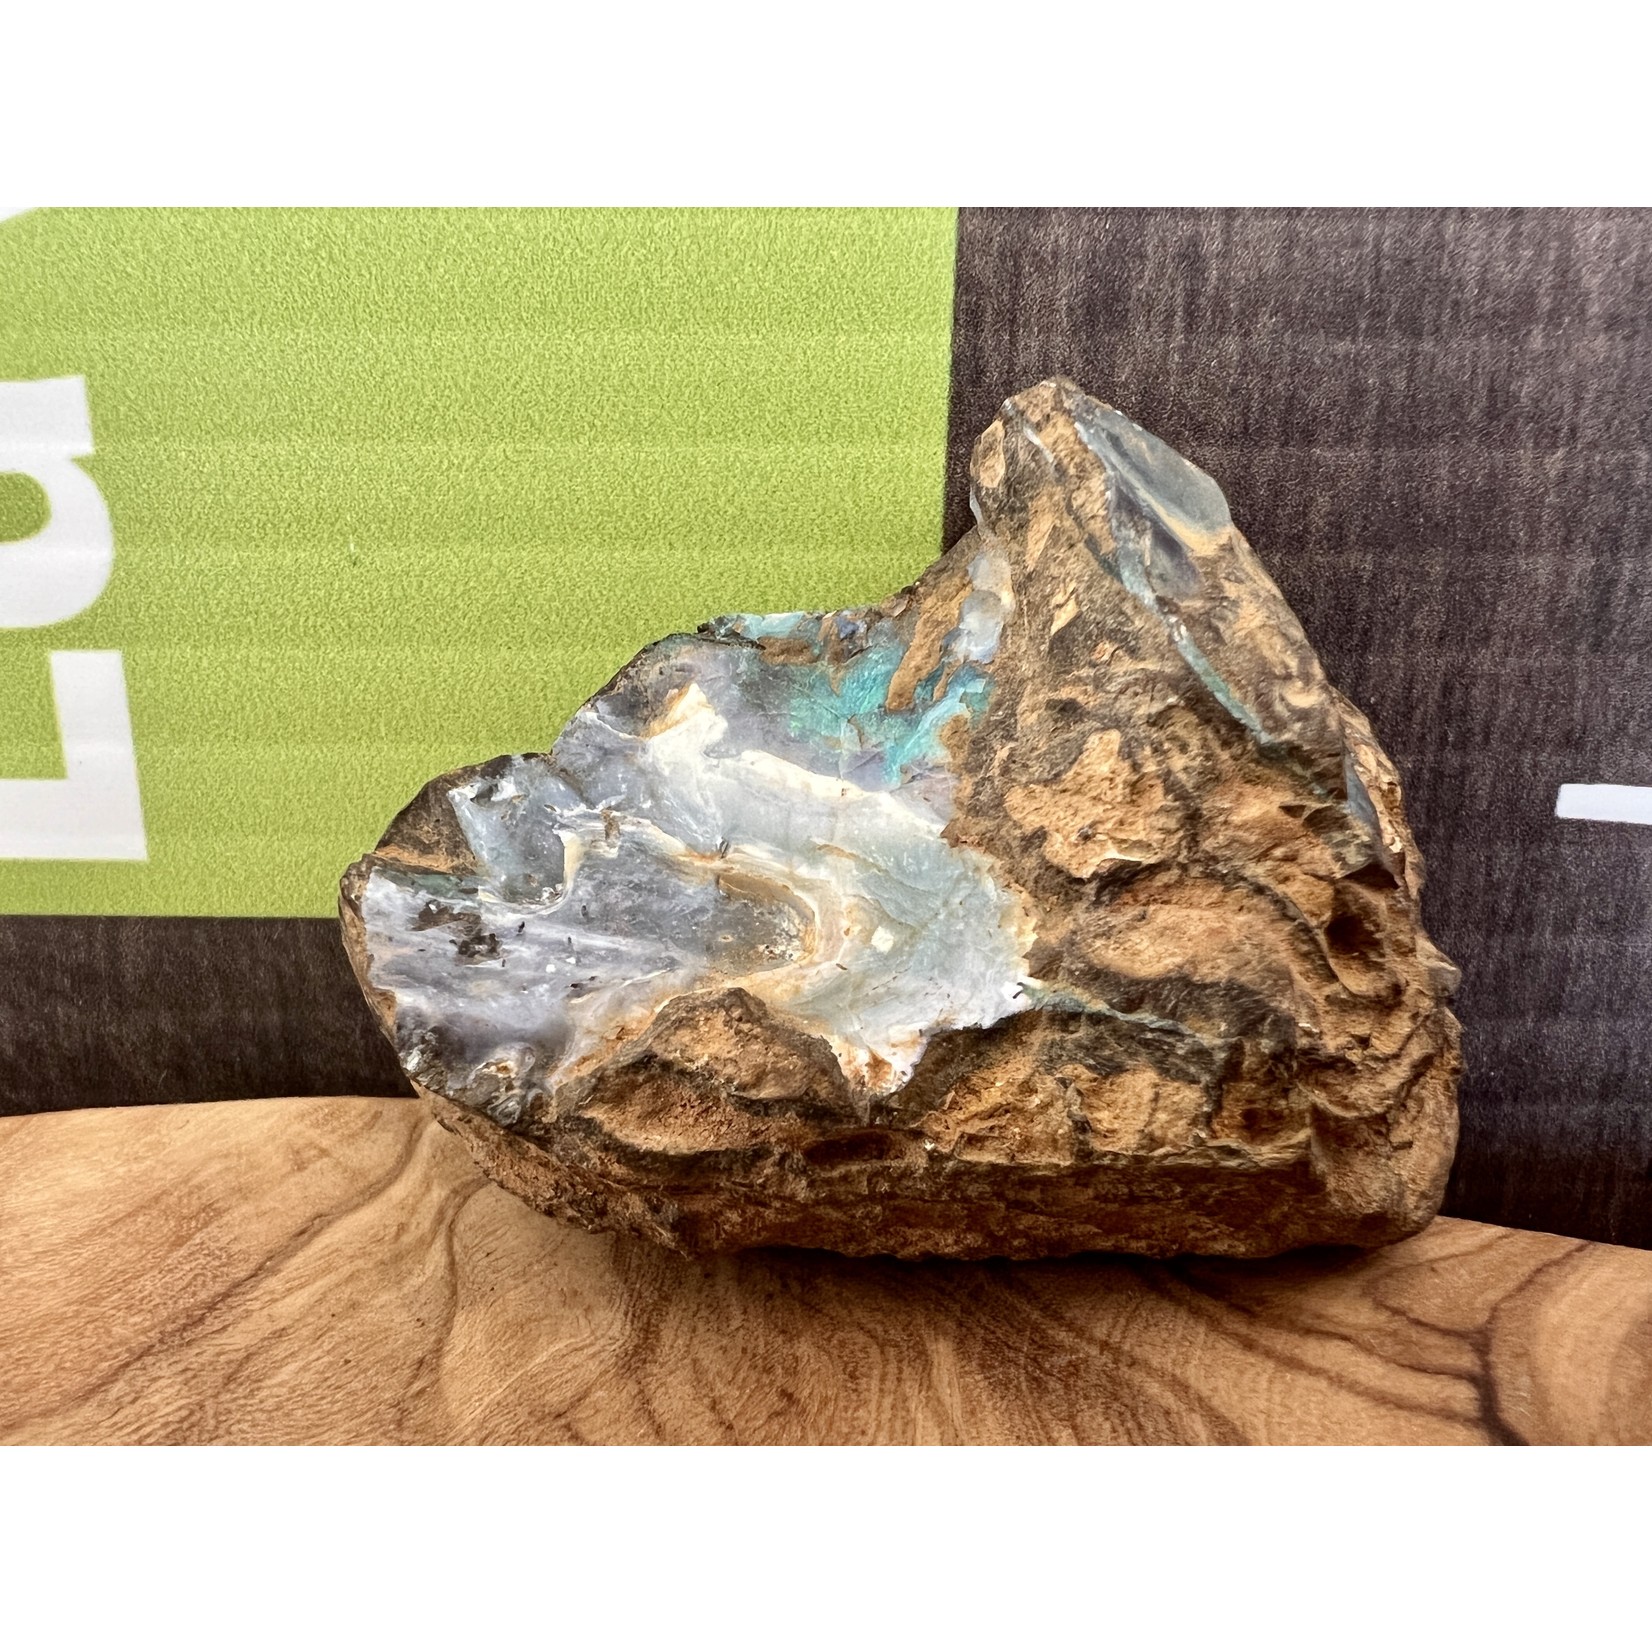 petite opale boulder vague de mer, symbolise la lumière, l'espoir, l’apaisement et l’harmonie